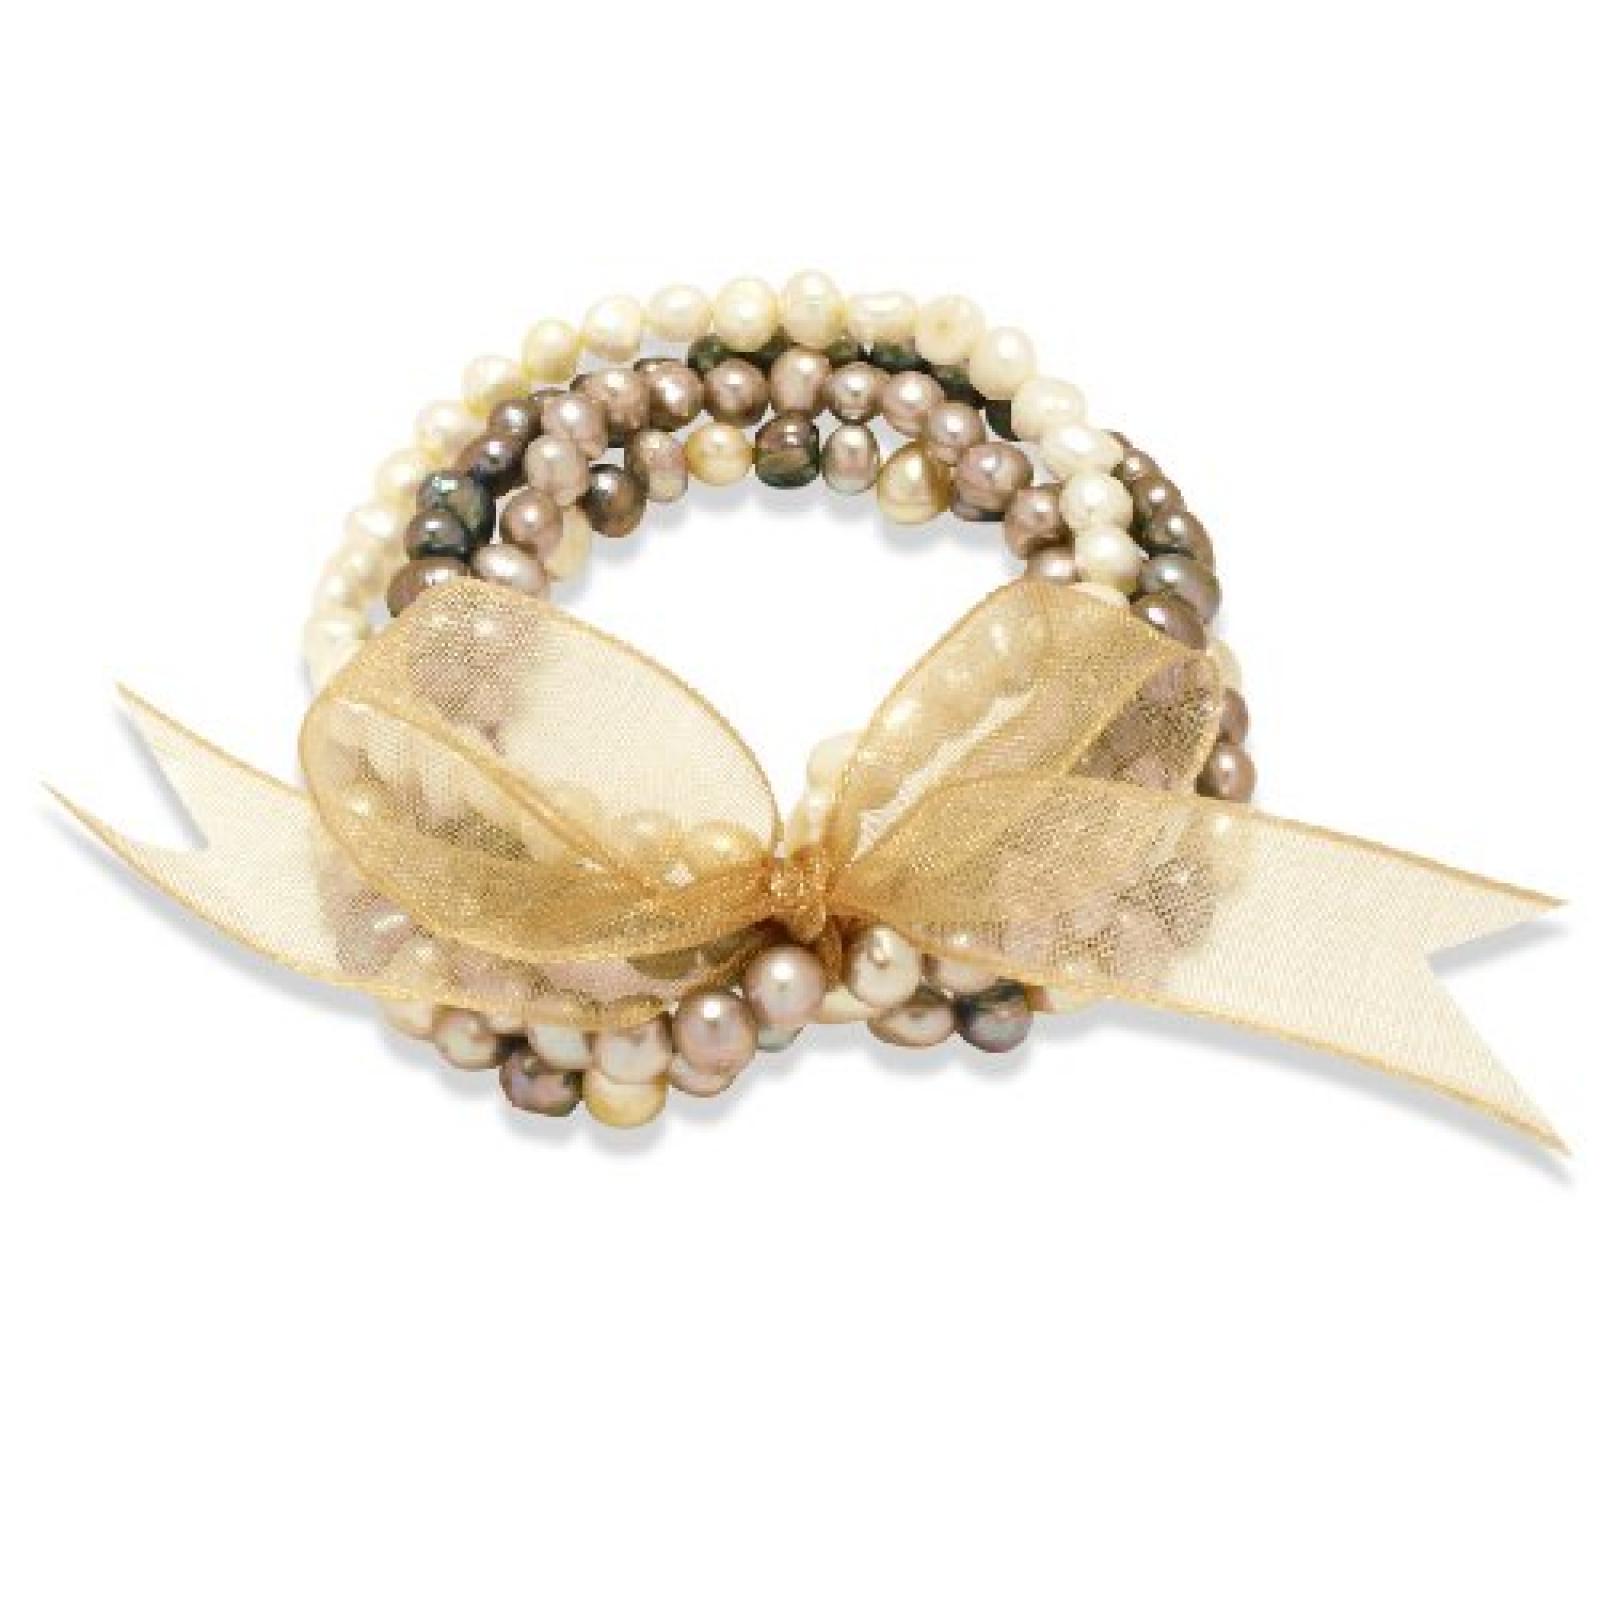 Valero Pearls Fashion Collection Damen-Armband elastisch Hochwertige Süßwasser-Zuchtperlen in ca.  4-6 mm Barock gold / elfenbein / tahitigrün  Organza gold  19 cm   60200114 